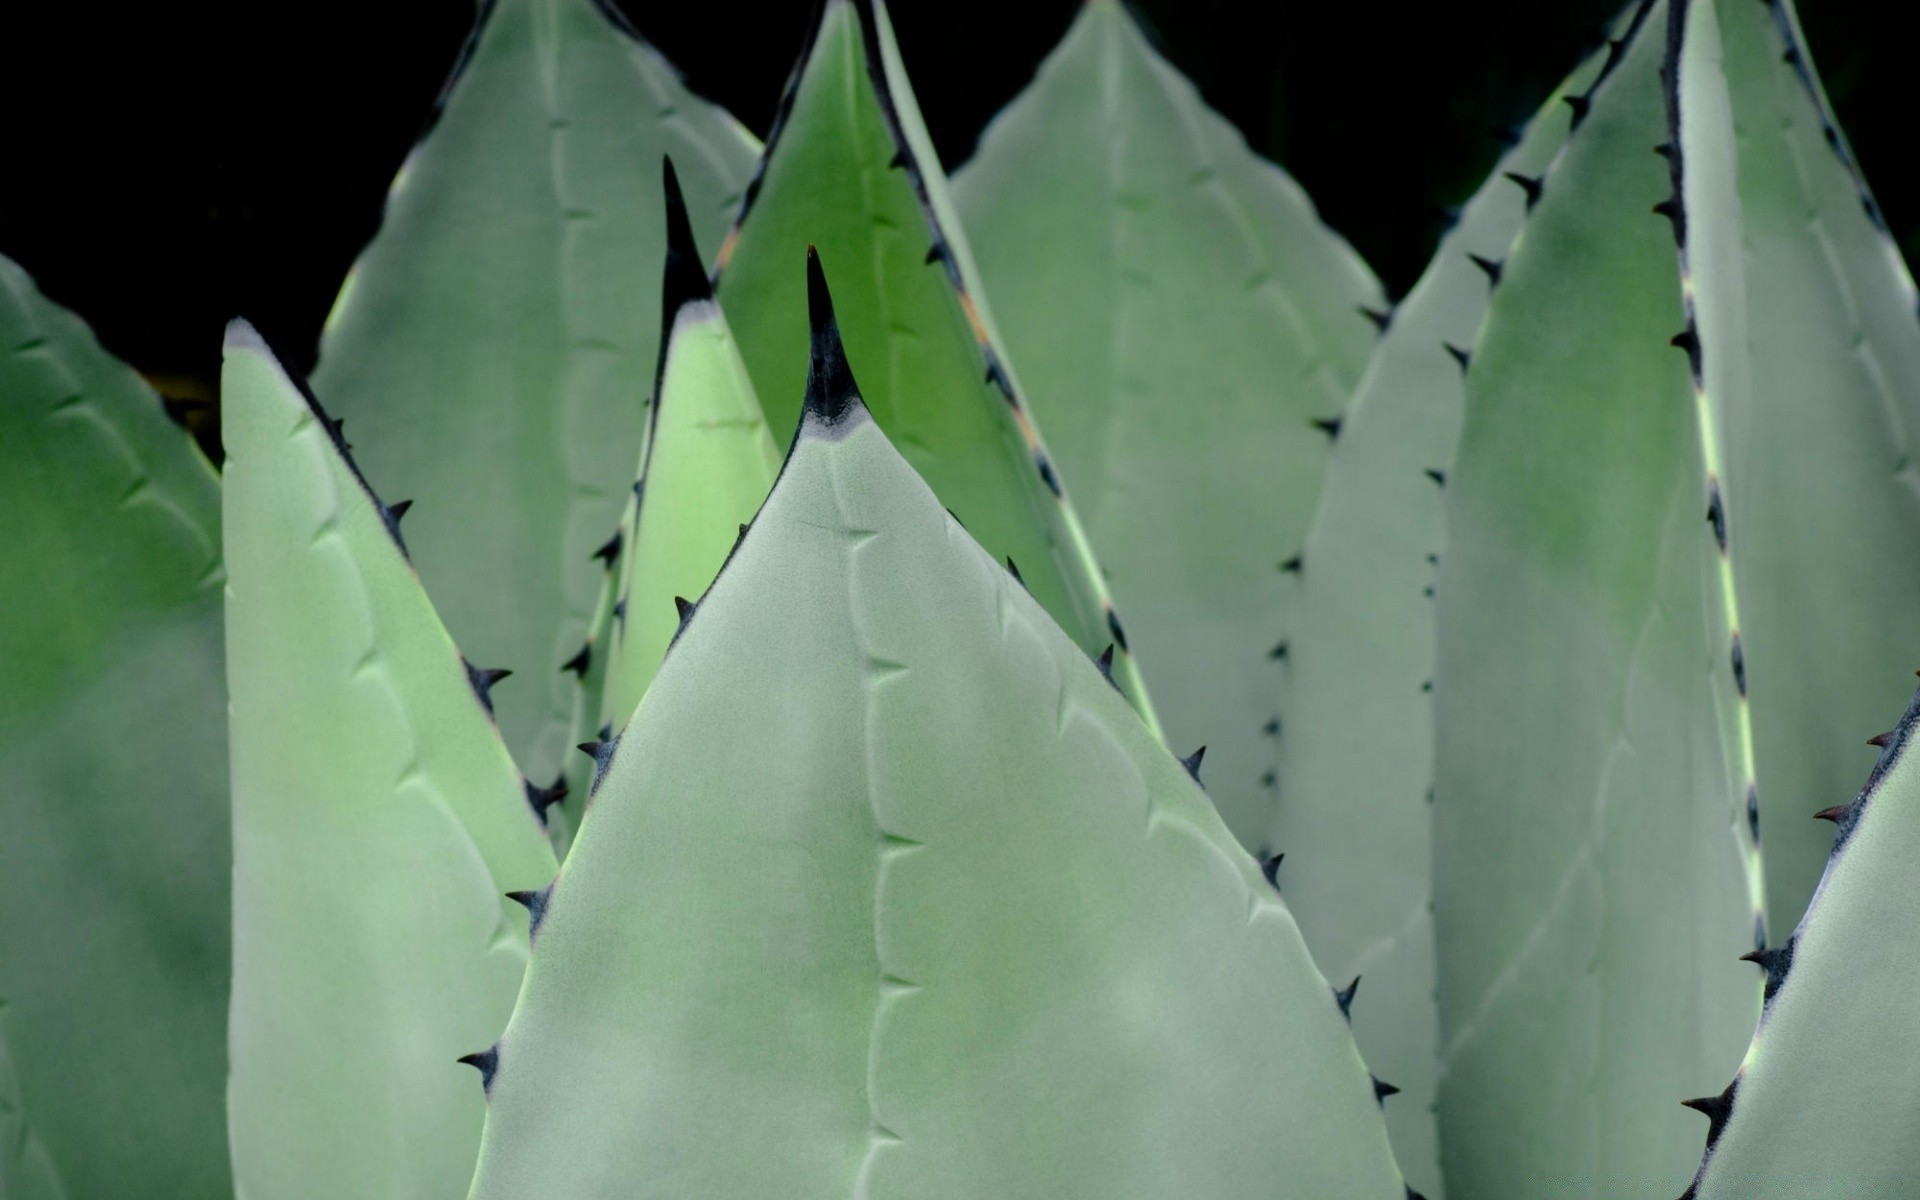 растения кактус позвоночник суккулент лист флора острый природа агавы пустыня алоэ колючие назад на открытом воздухе рост спайк среды сад медицина шаблон